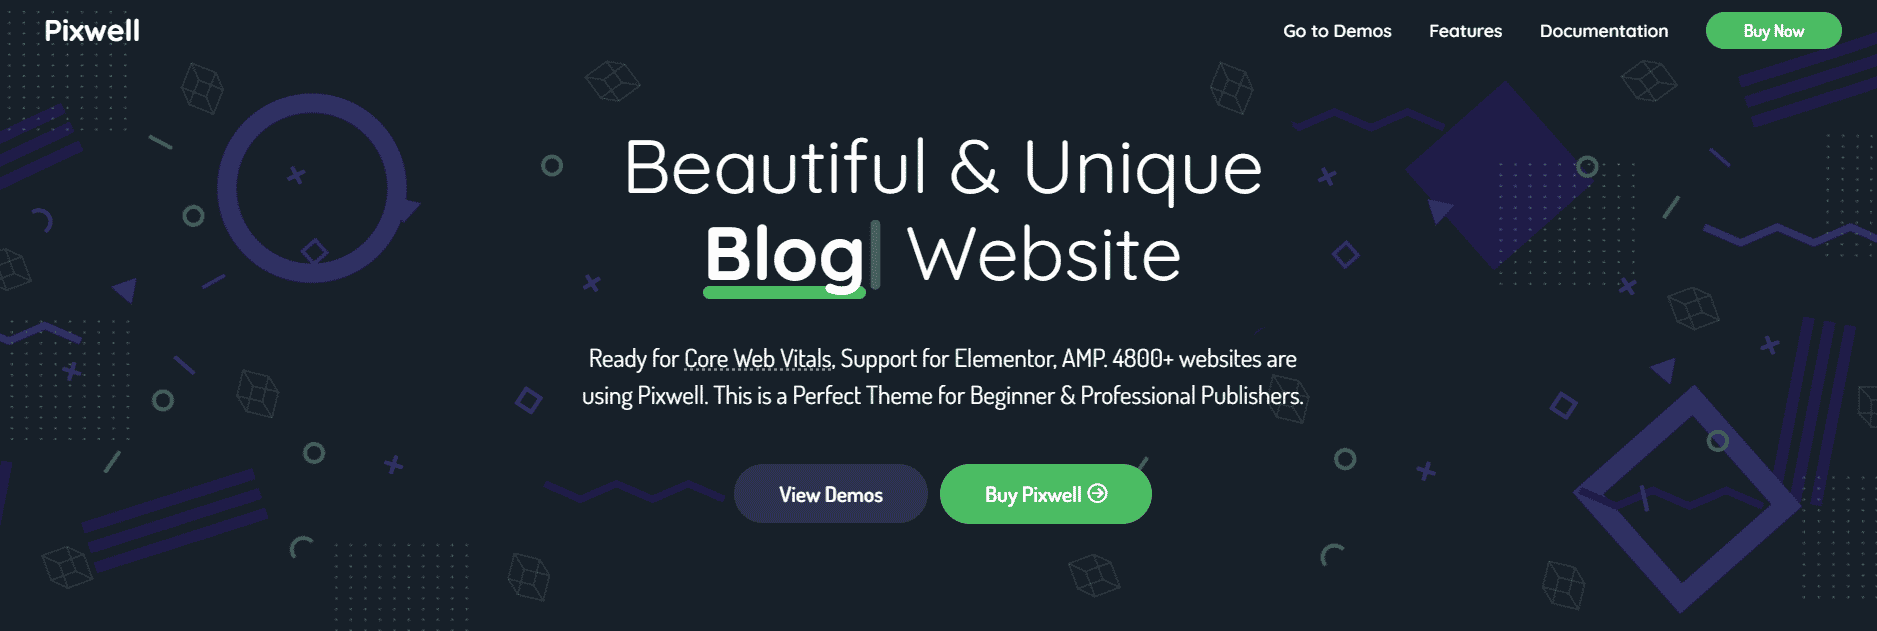 Screenshot van de website voor Pixwell, een van de beste aangesloten WordPress thema's.